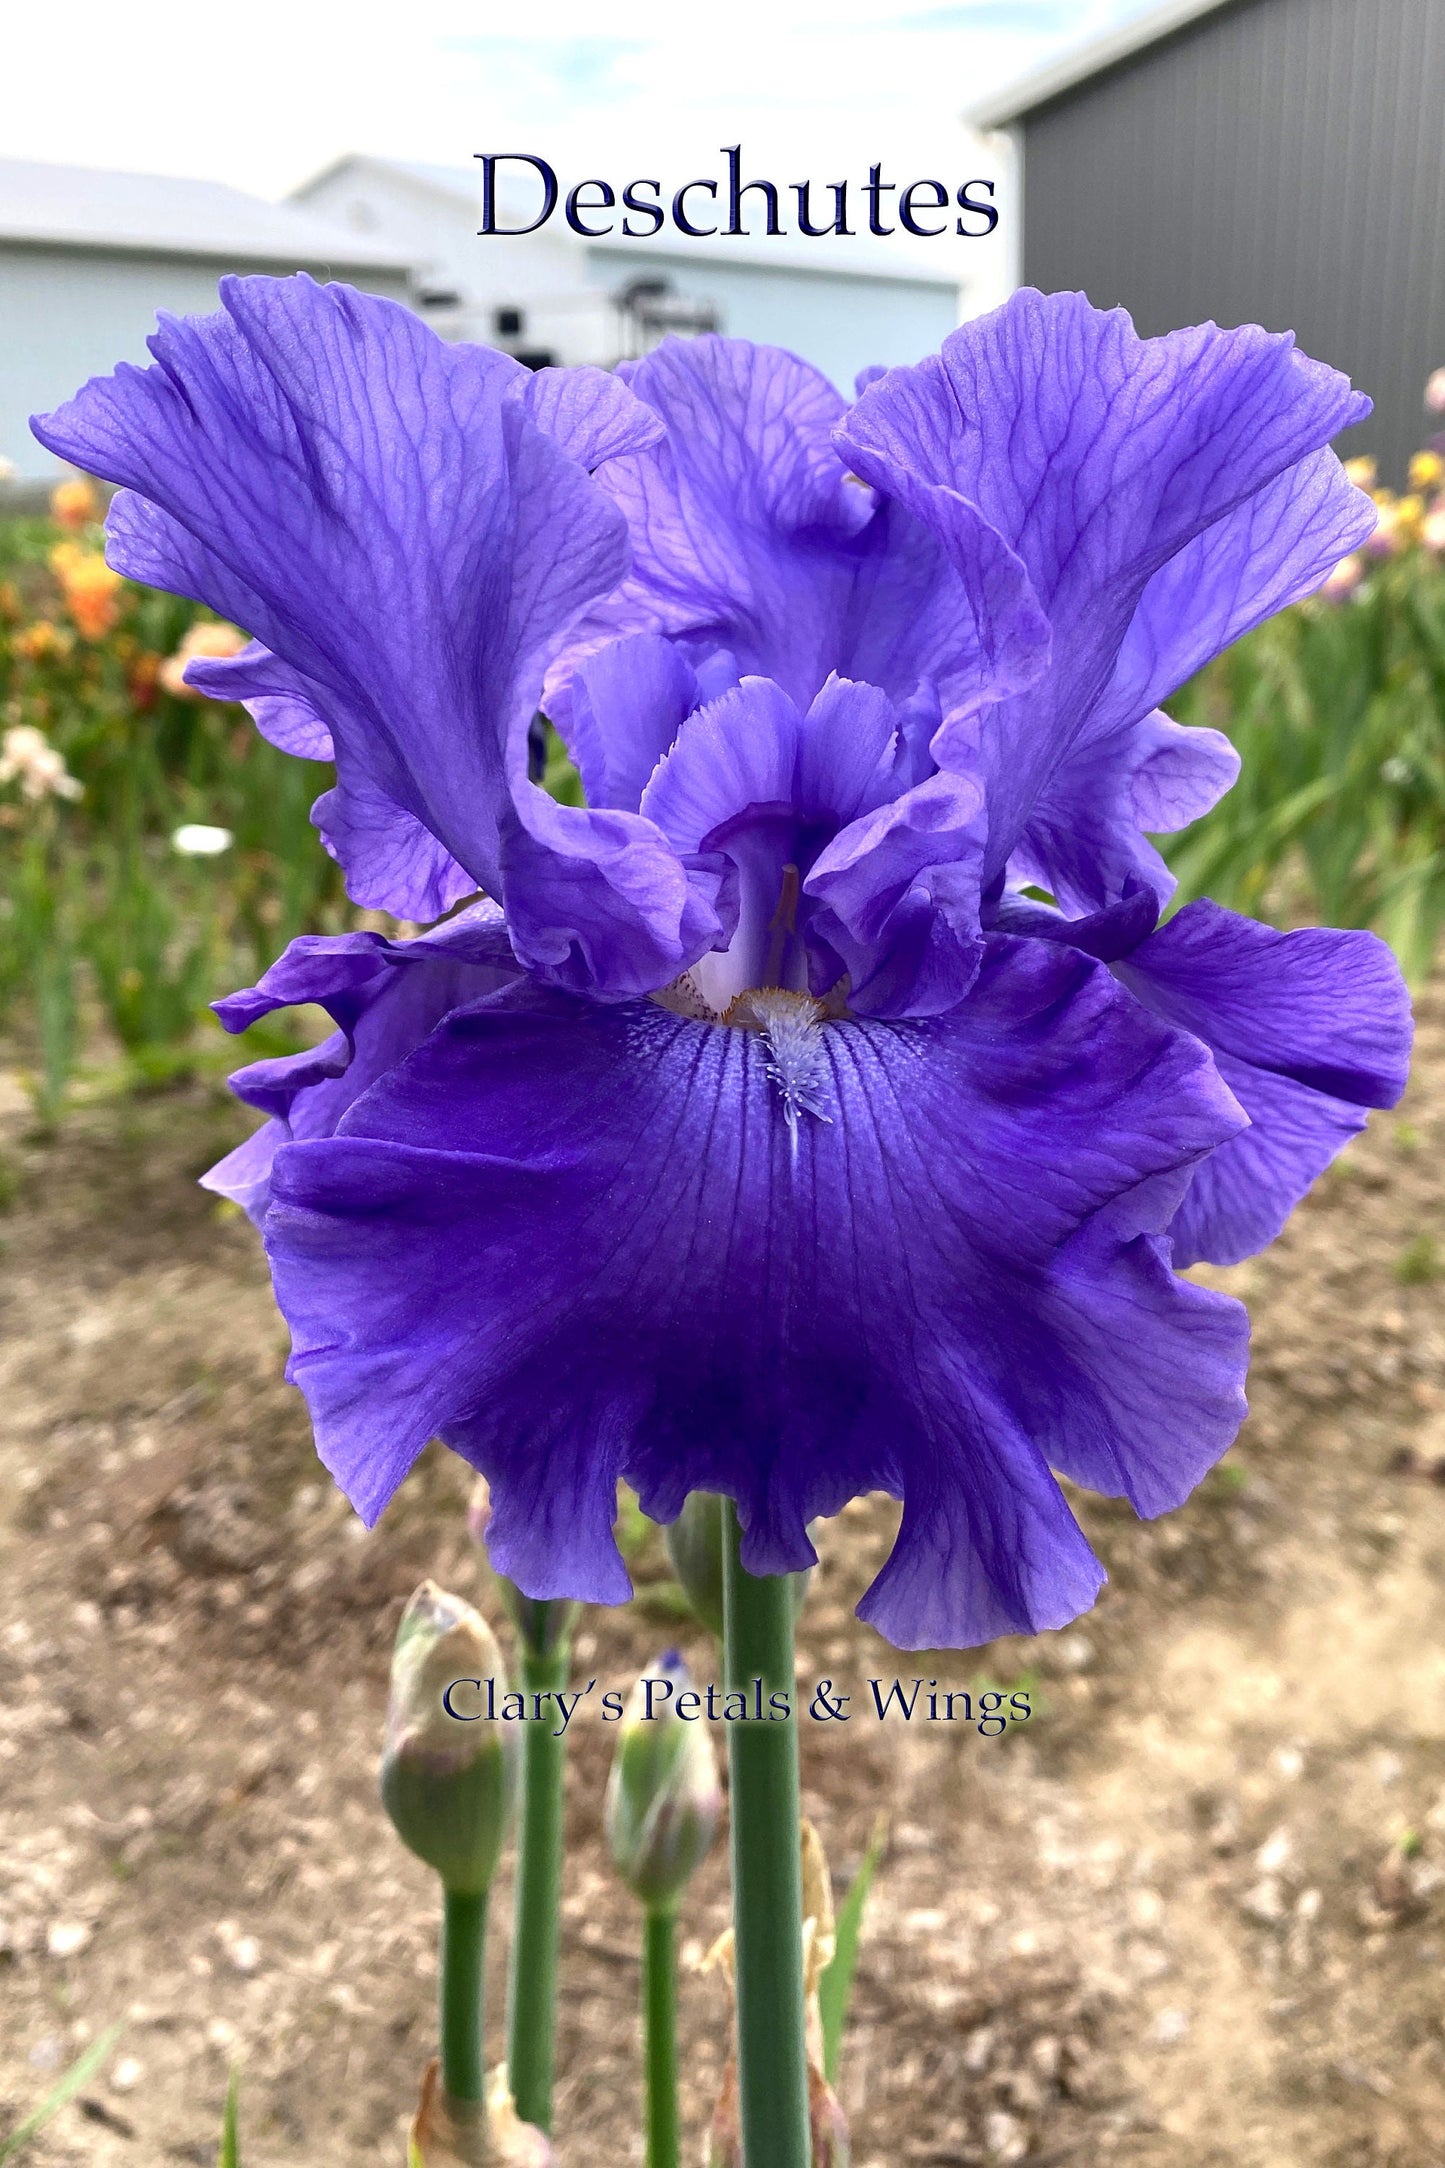 Deschutes - 2018 Tall Bearded Iris - Ruffled Garden Show Stopper!